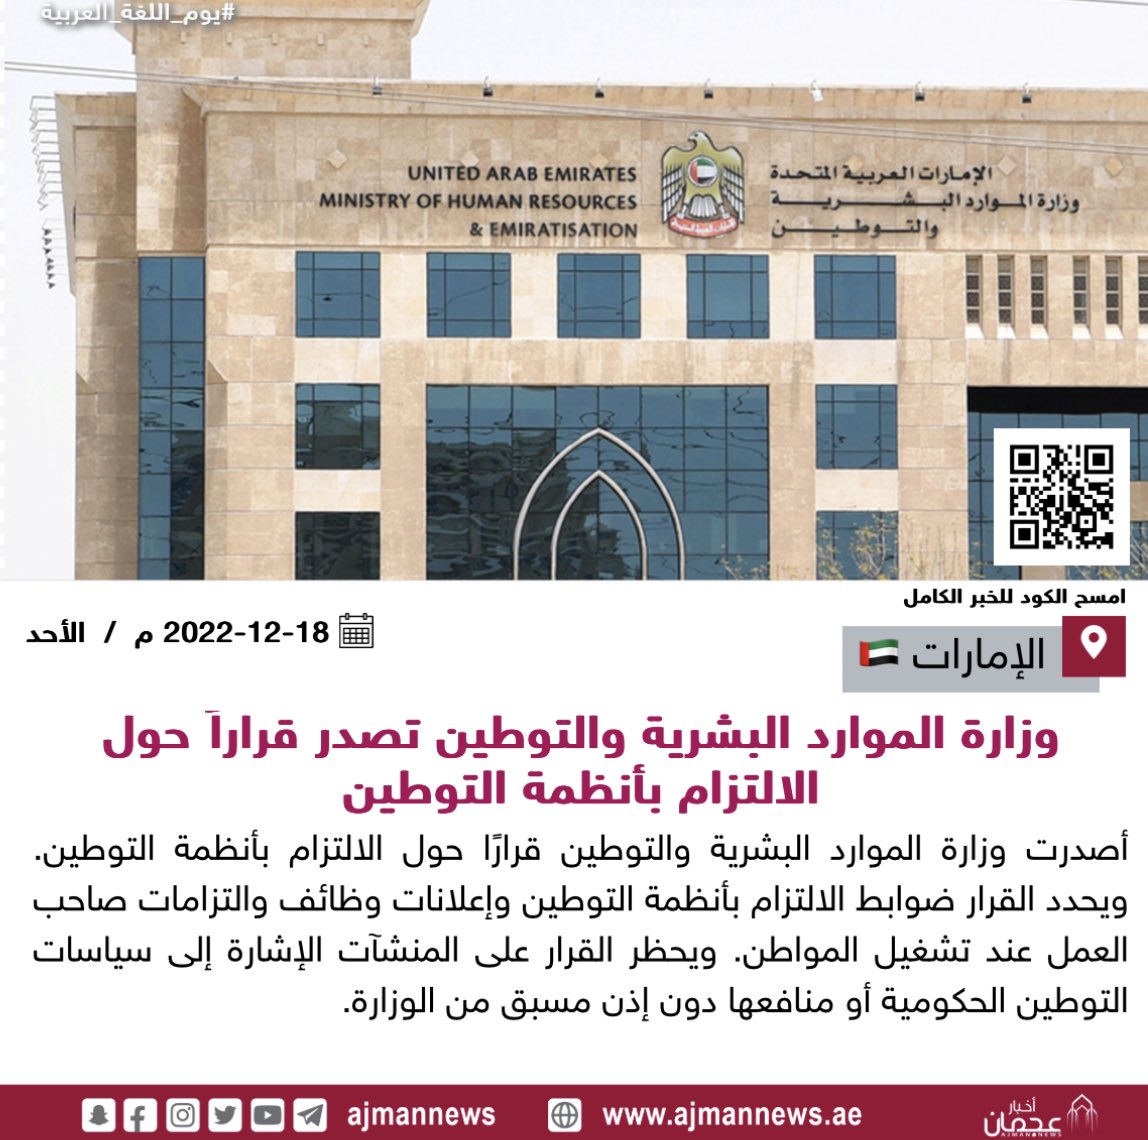 أخبار عجمان | وزارة الموارد البشرية والتوطين تصدر قراراً حول الالتزام  بأنظمة التوطين #أخبار_الإمارات #أبوظبي #يوم_اللغة_العربية